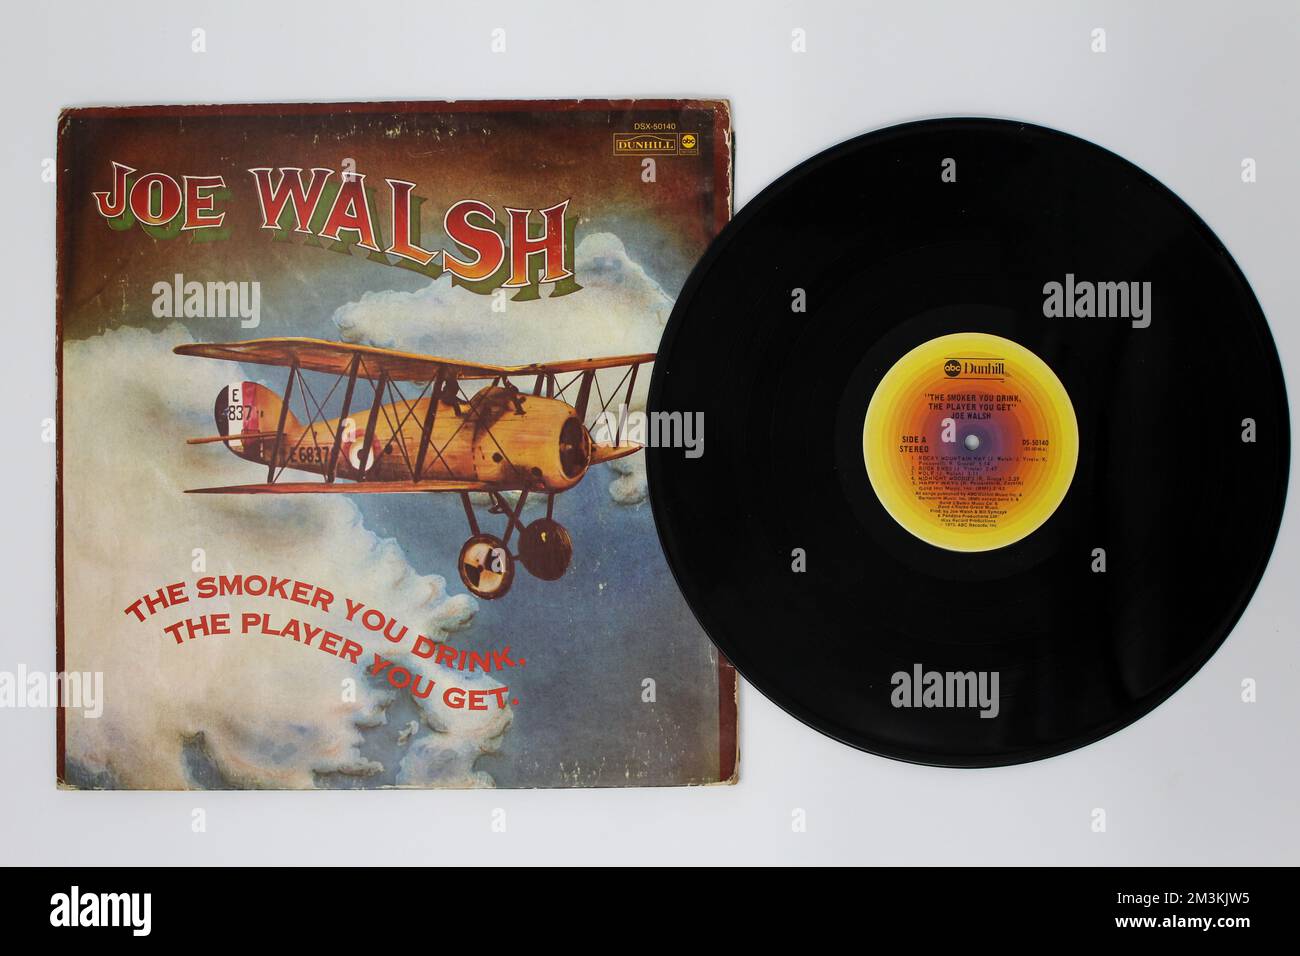 The Smoker You Drink, The Player You Get es el segundo álbum de estudio del guitarrista y cantante de rock estadounidense Joe Walsh en vinilo, portada del álbum LP. Foto de stock